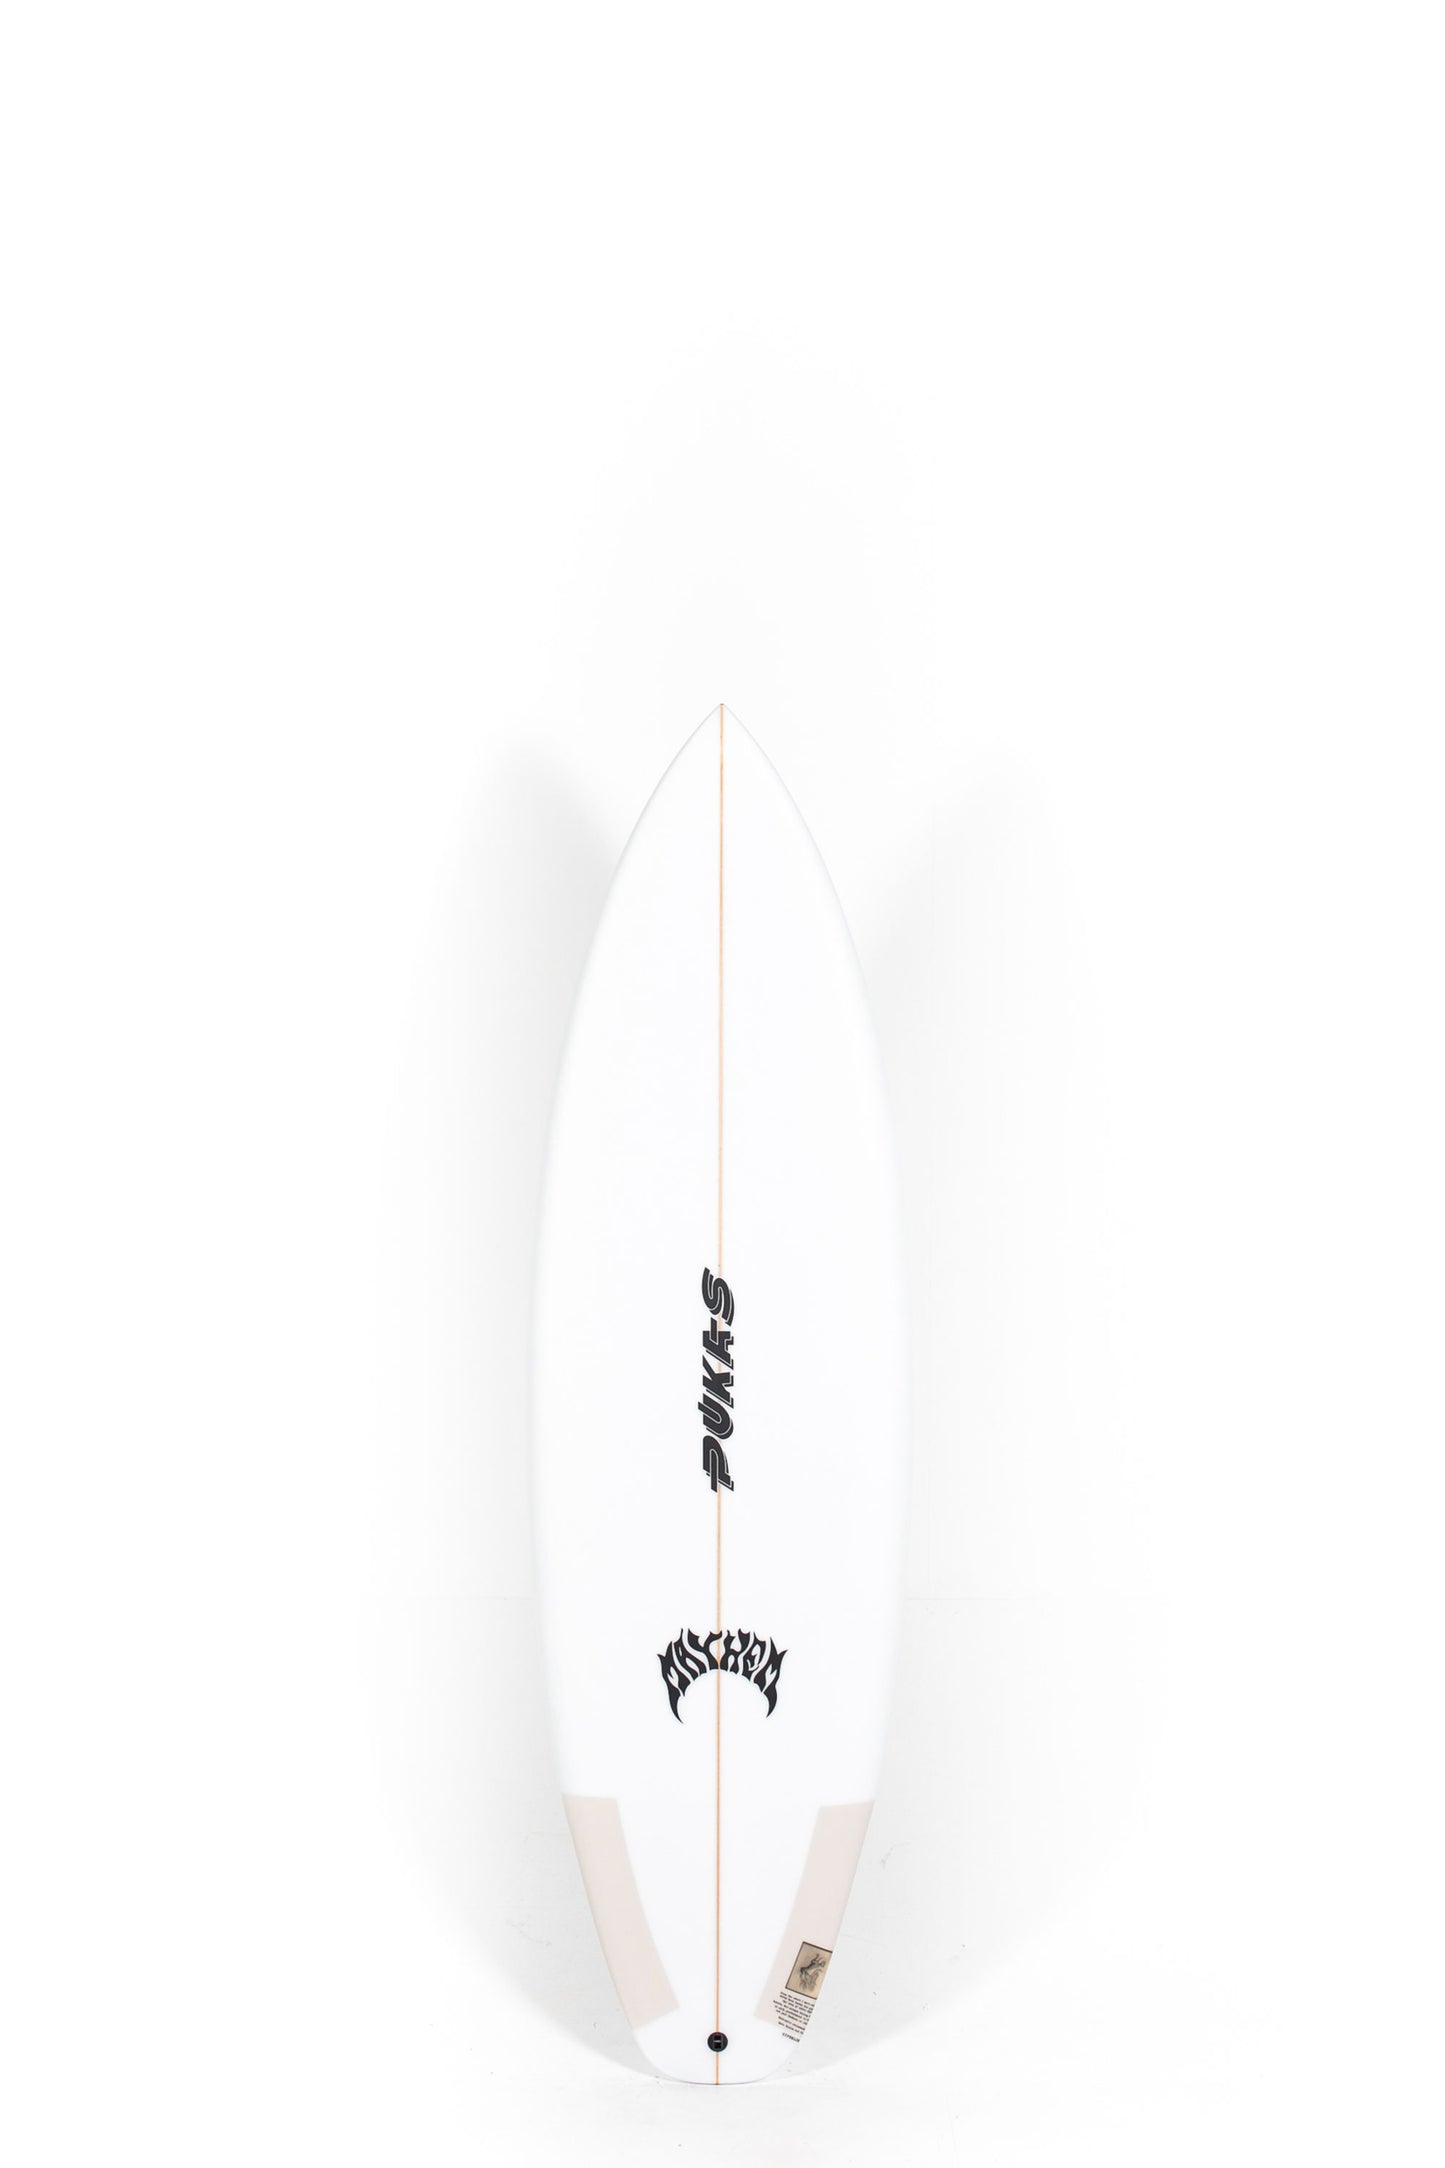 Pukas Surf Shop - Pukas Surfboard - HYPERLINK by Matt Biolos -  6'0" x 20.50 x 2.50 - 33.5L - PM01223